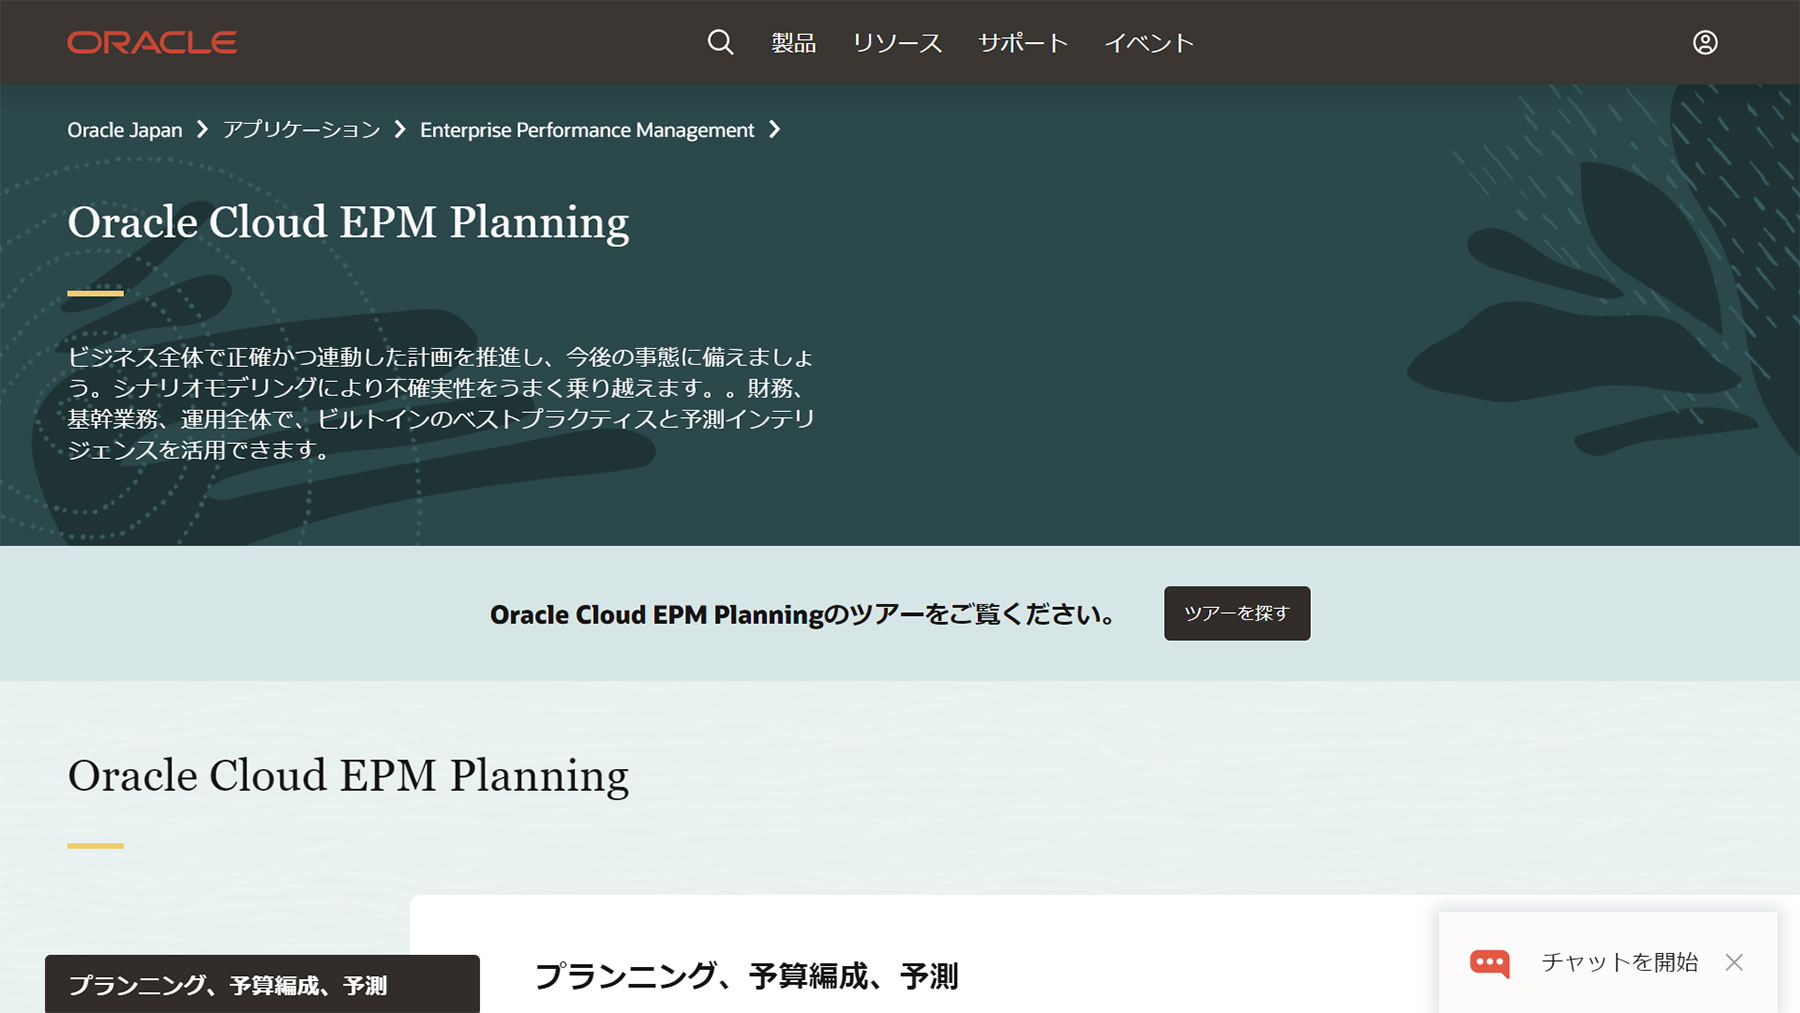 Oracle Cloud EPM Planning